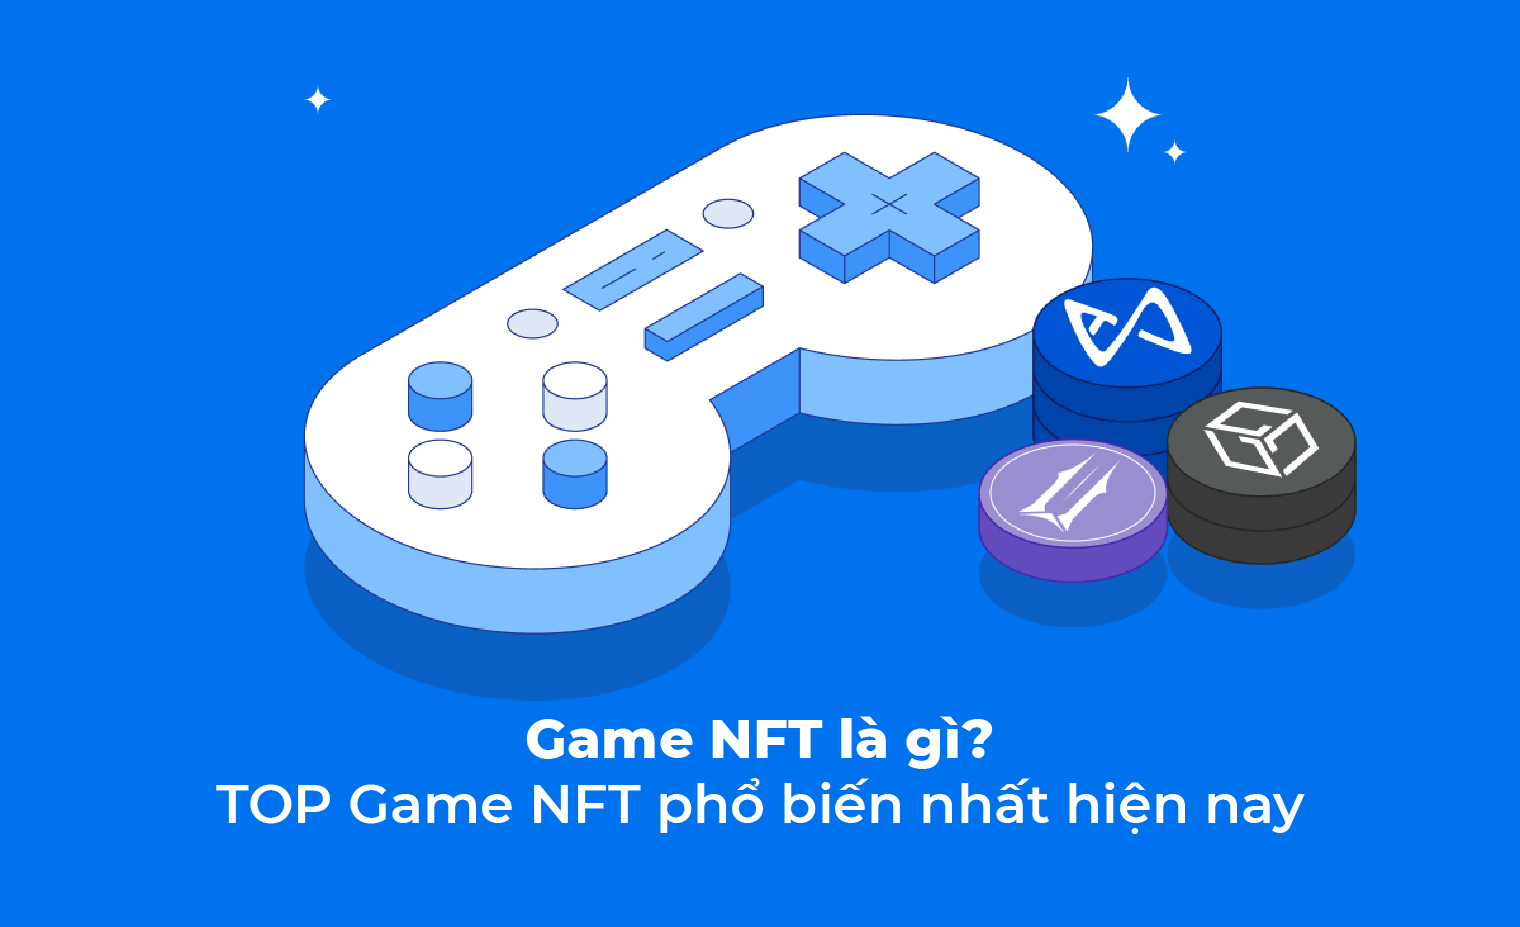 Game NFT: Game NFT là xu hướng phát triển mới của thế giới game. Với những tựa game sử dụng công nghệ NFT, người chơi có thể kiếm tiền thật và sở hữu các vật phẩm độc quyền trong game chỉ bằng cách sử dụng tiền ảo. Đây chắc chắn sẽ là một trải nghiệm hoàn toàn mới mẻ và hấp dẫn cho tín đồ game. Hãy cùng trải nghiệm đam mê game NFT với những hình ảnh mới nhất ở đây.